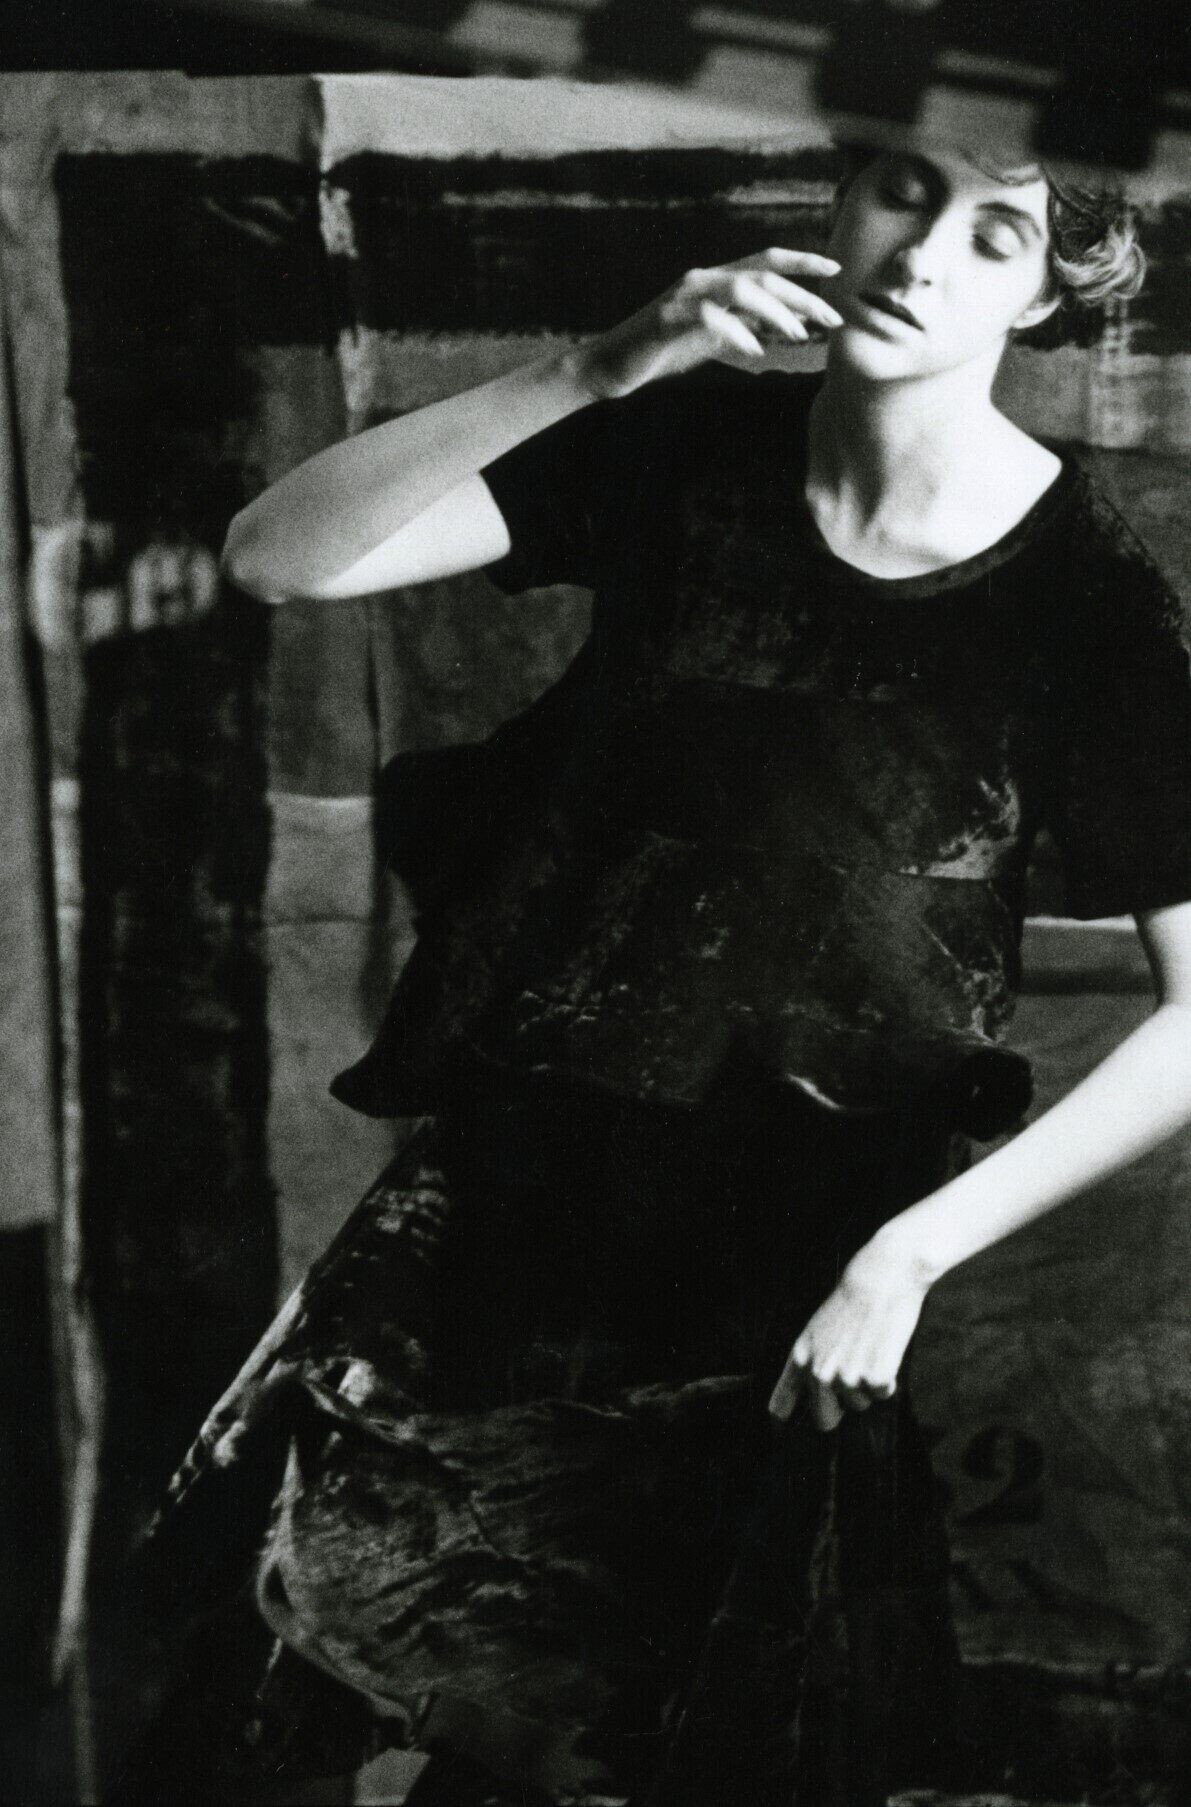 Мода Cacharel, 1990 год. Фотограф Сара Мун